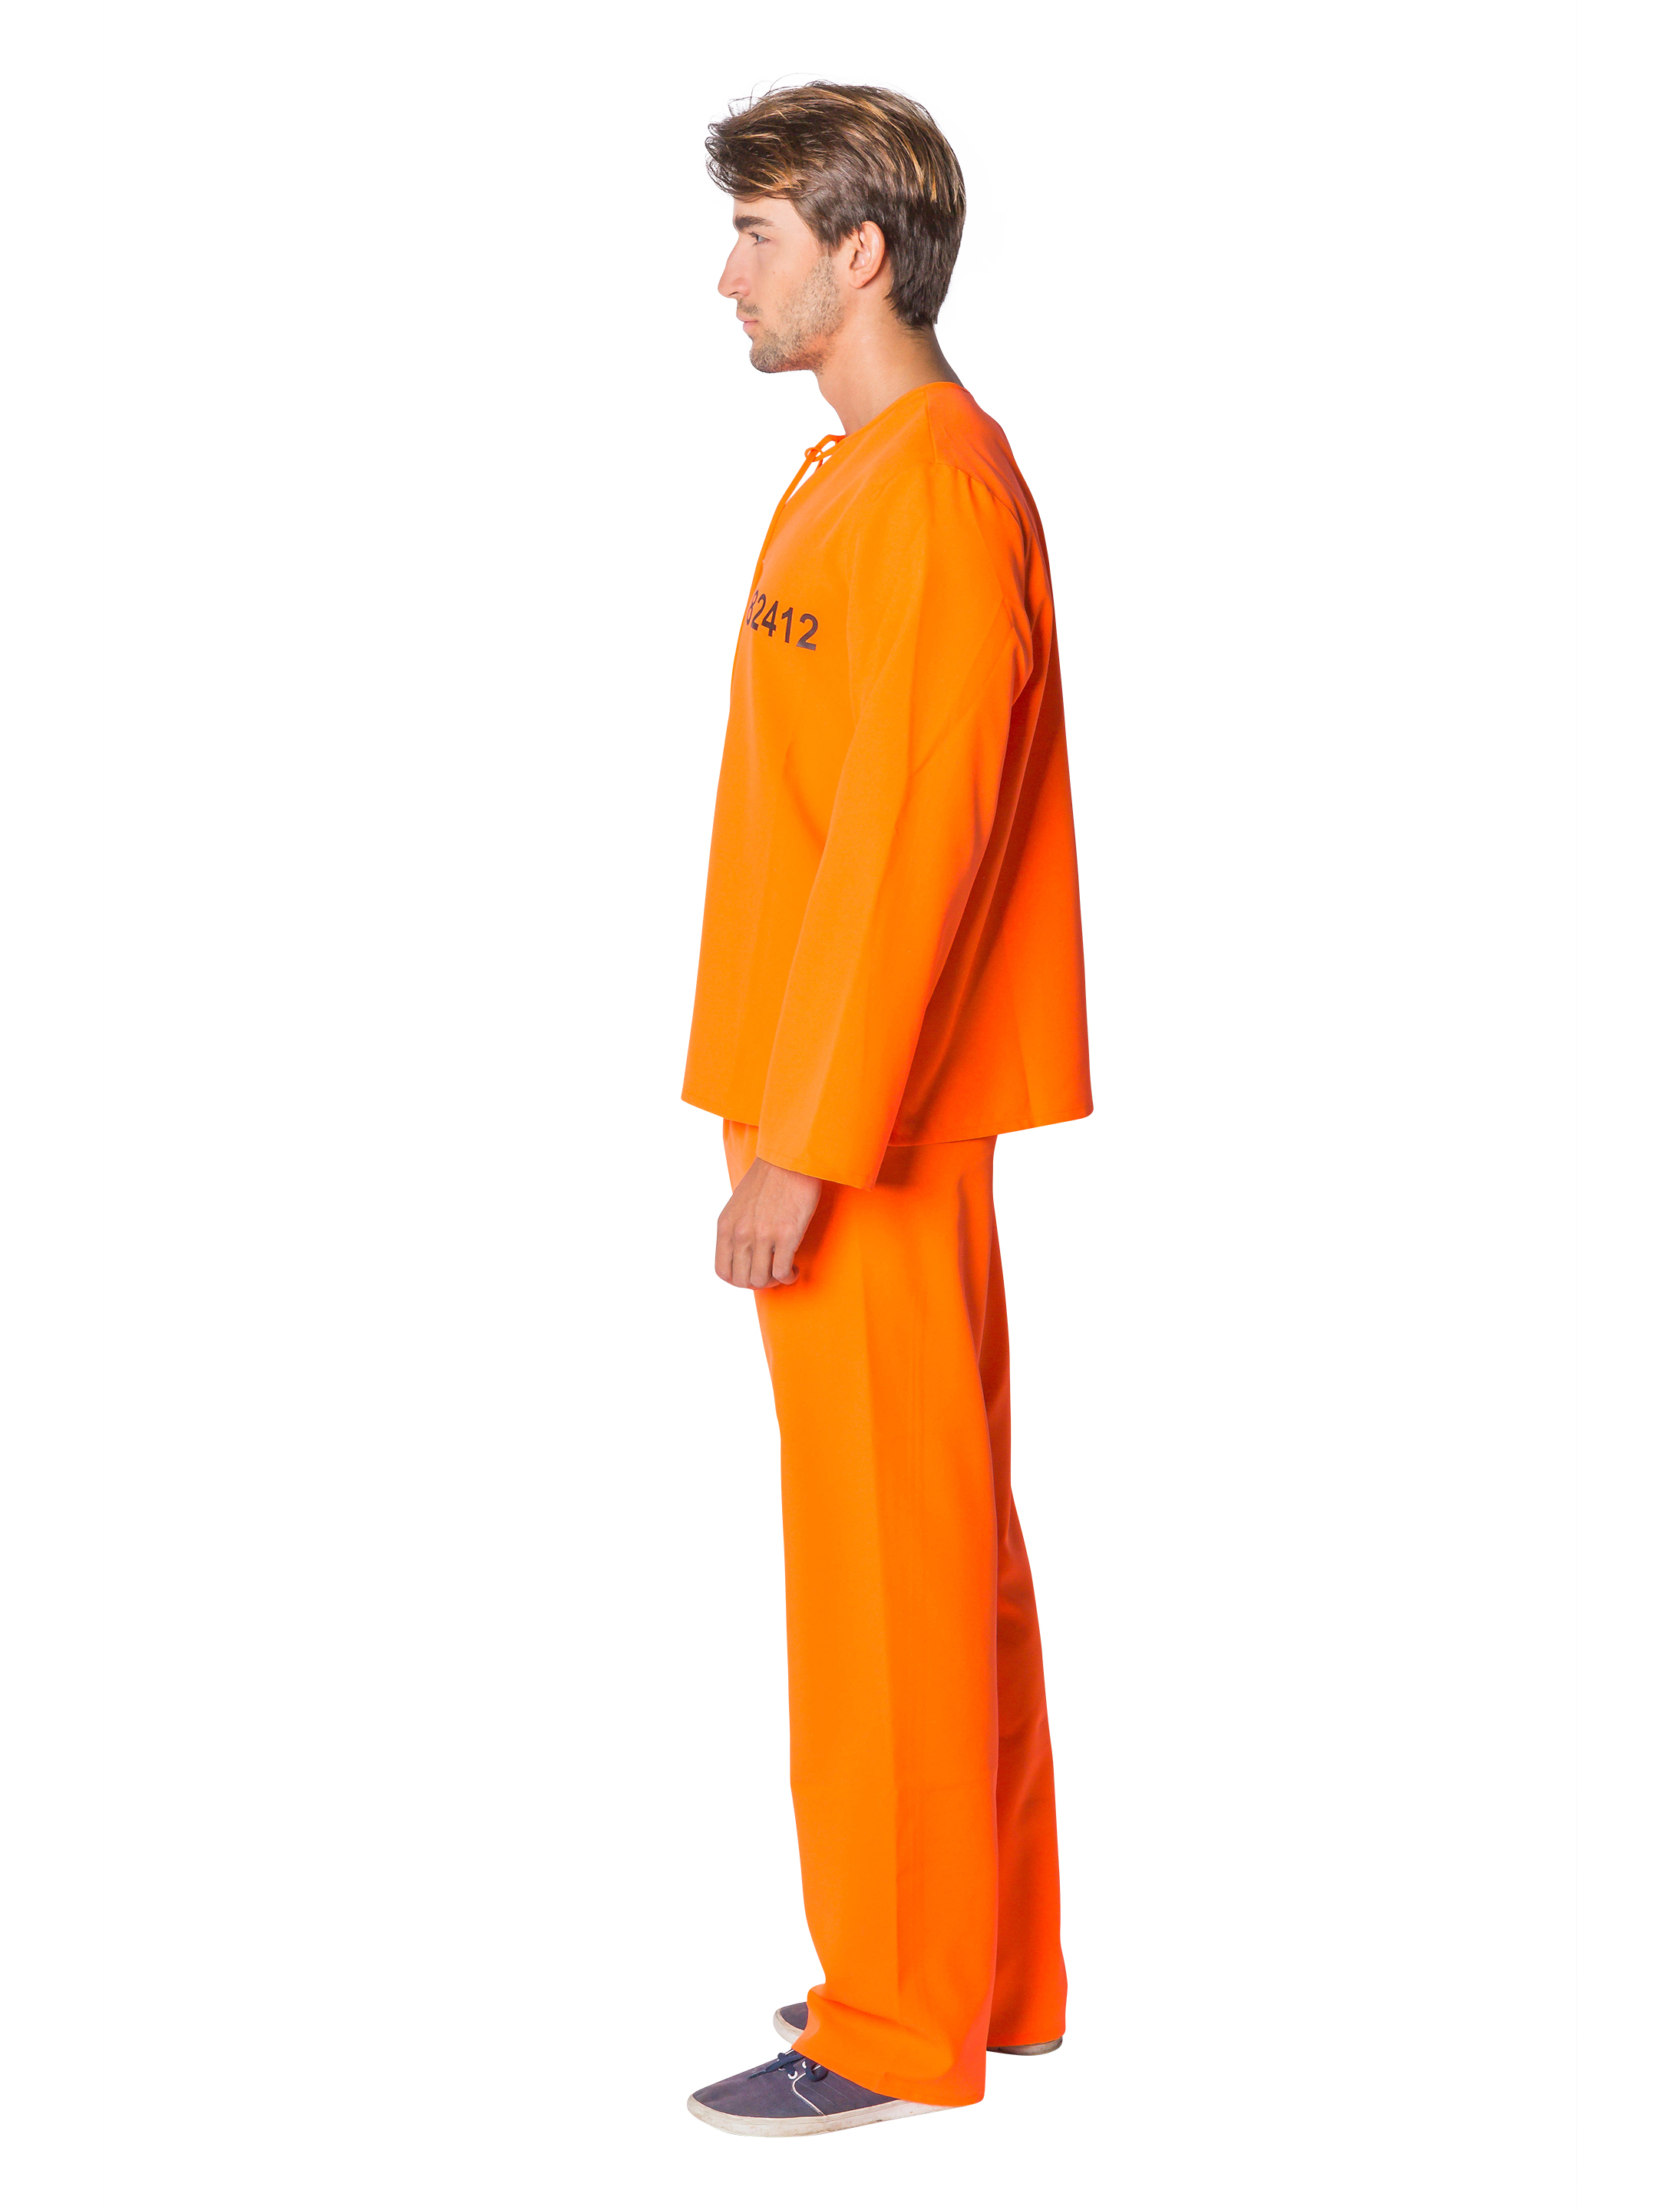 Gefangener USA 2-tlg. orange 50-52